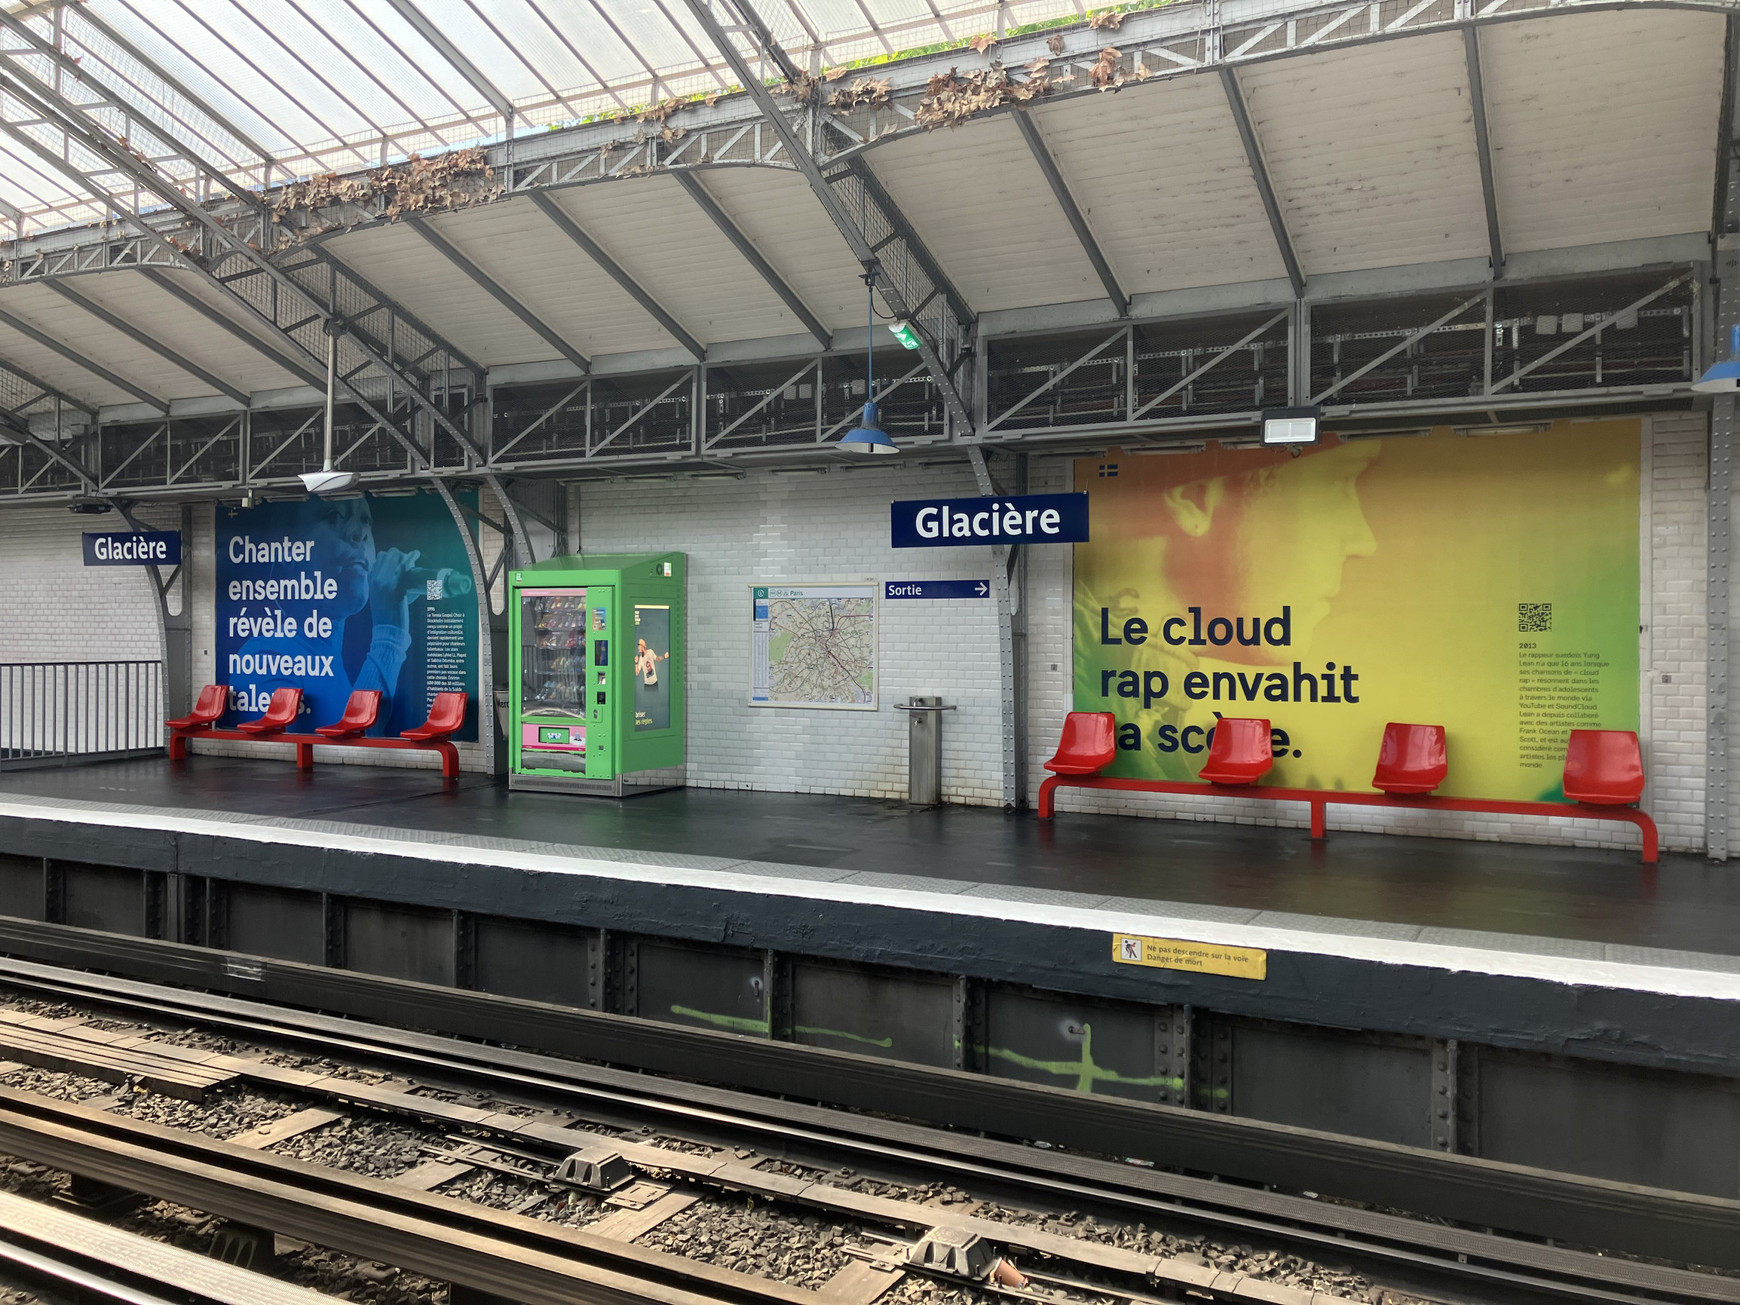 L’exposition Swedish Music Moments est à retrouvée jusqu'au 14 juin à la station Glacière.© Lou Surrans La musique suédoise célébrée dans le métro parisien